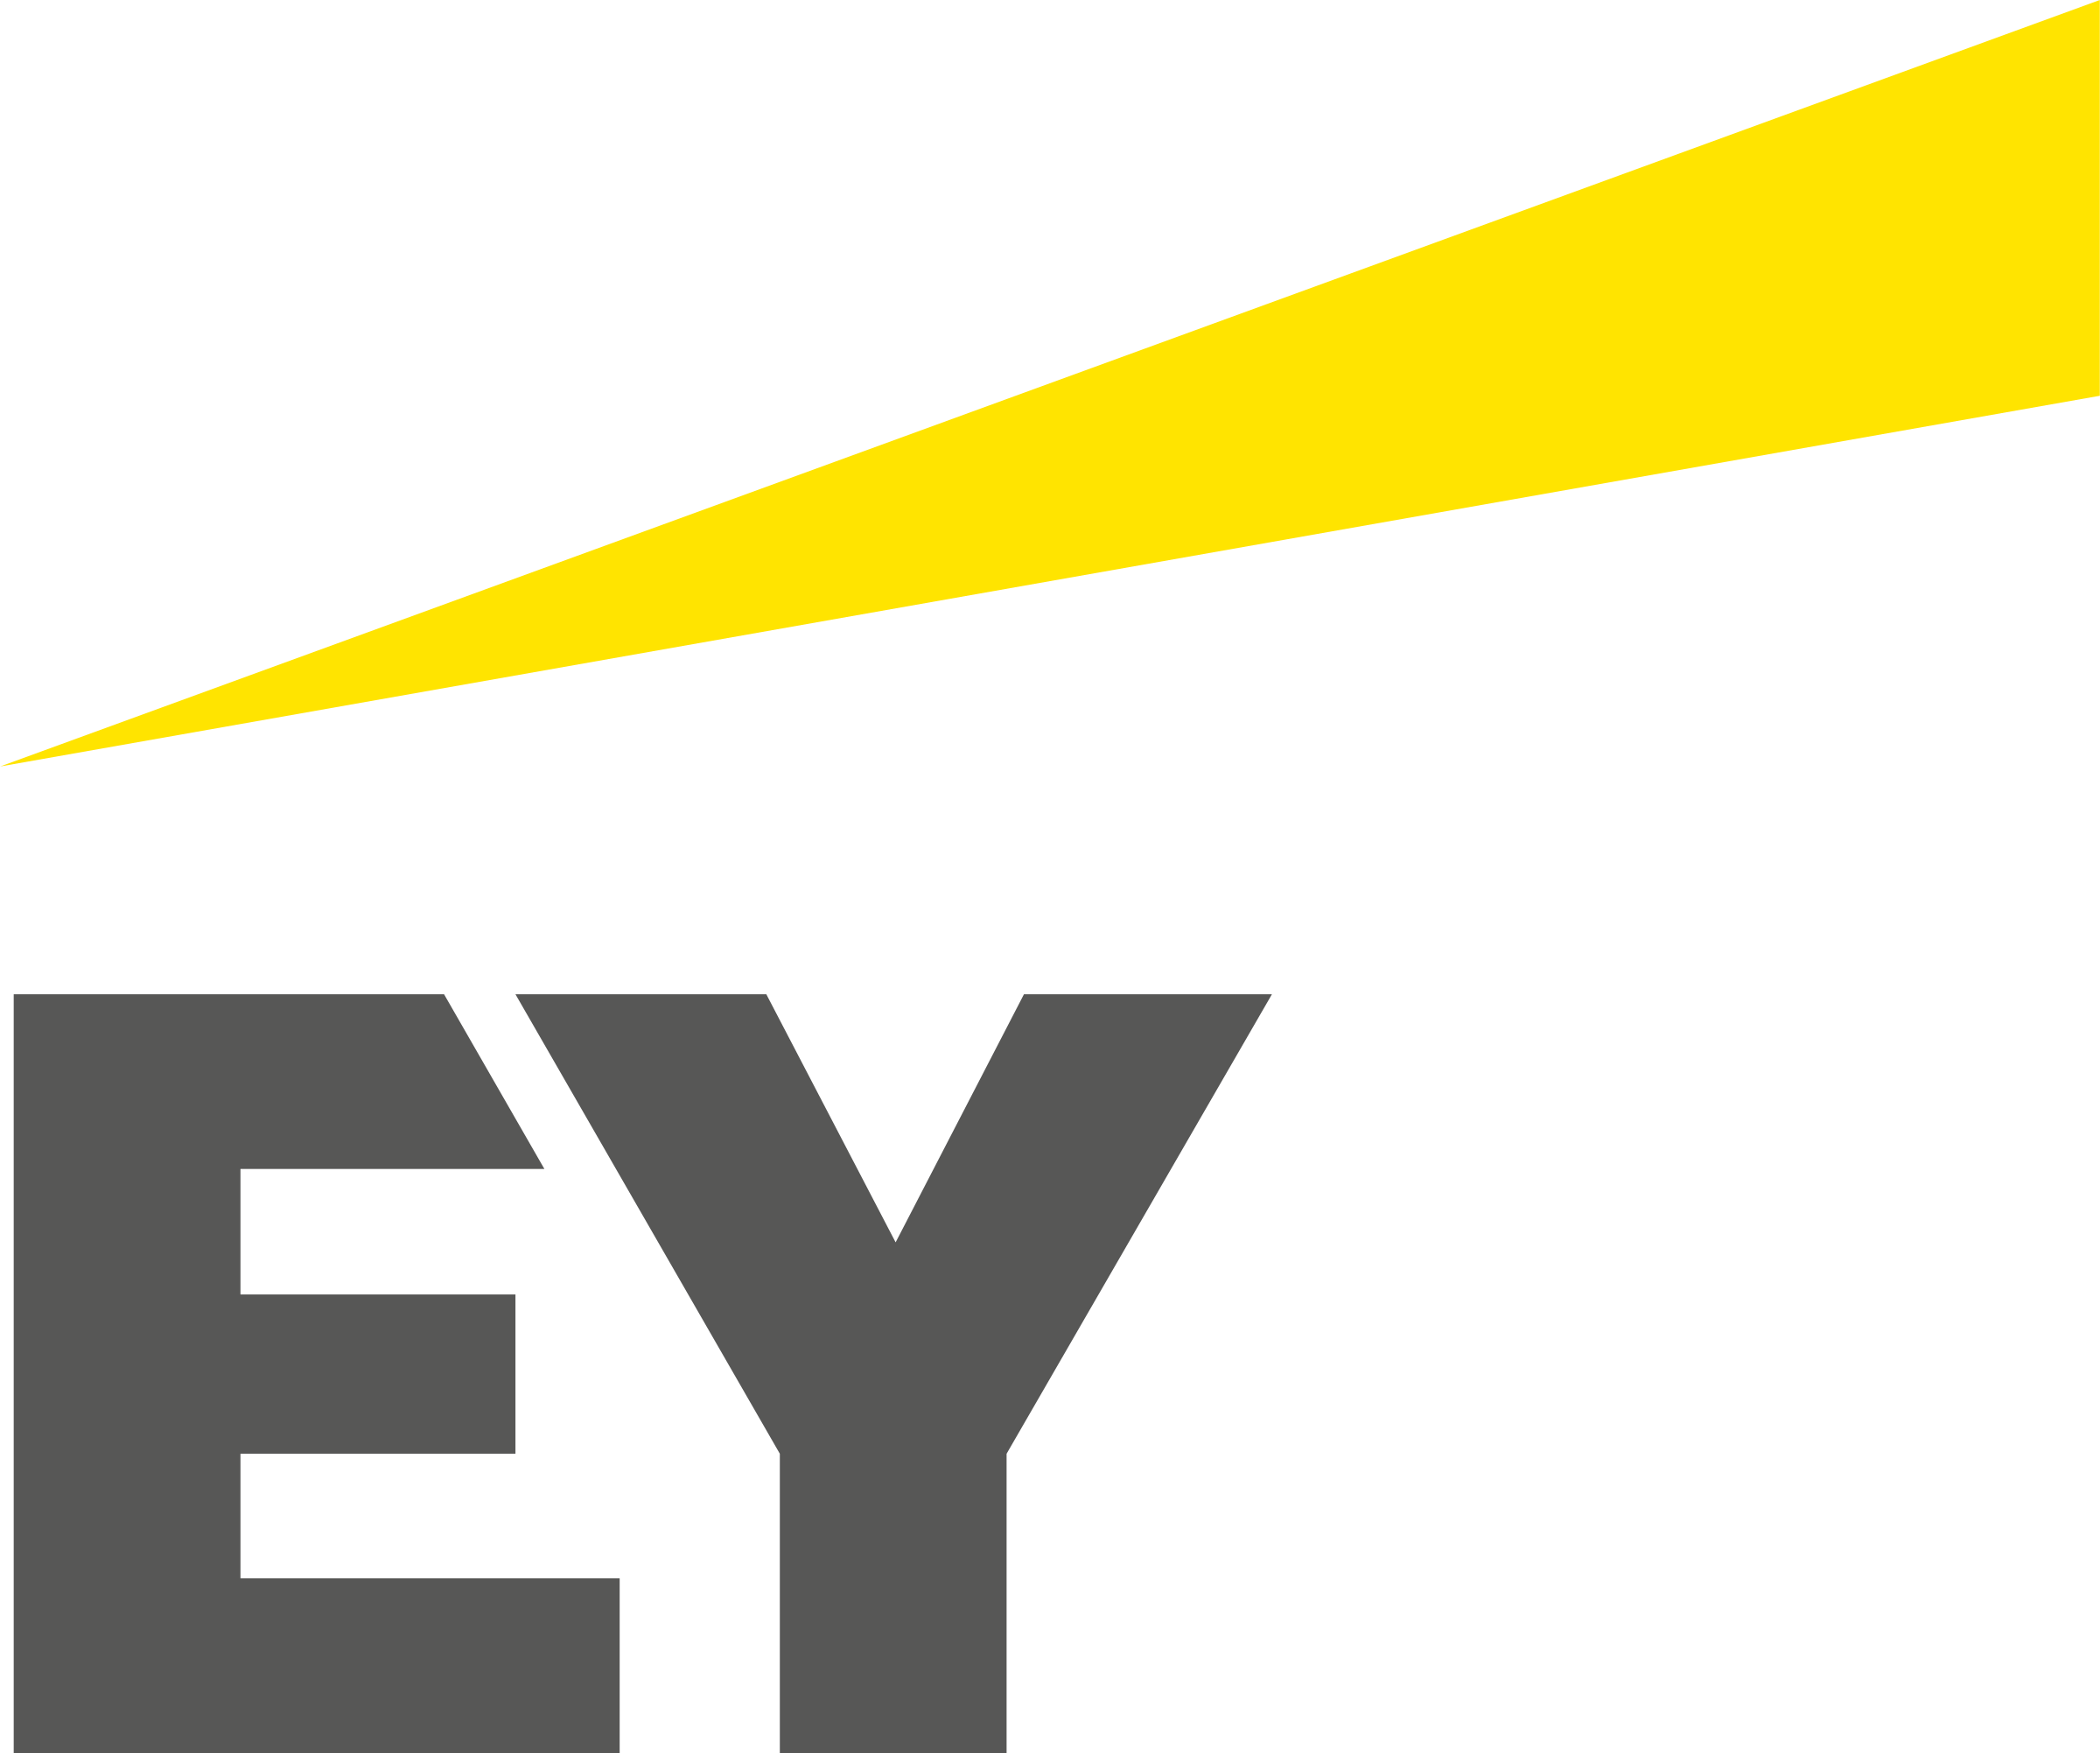 ernst-young-ey-logo-png-transparent